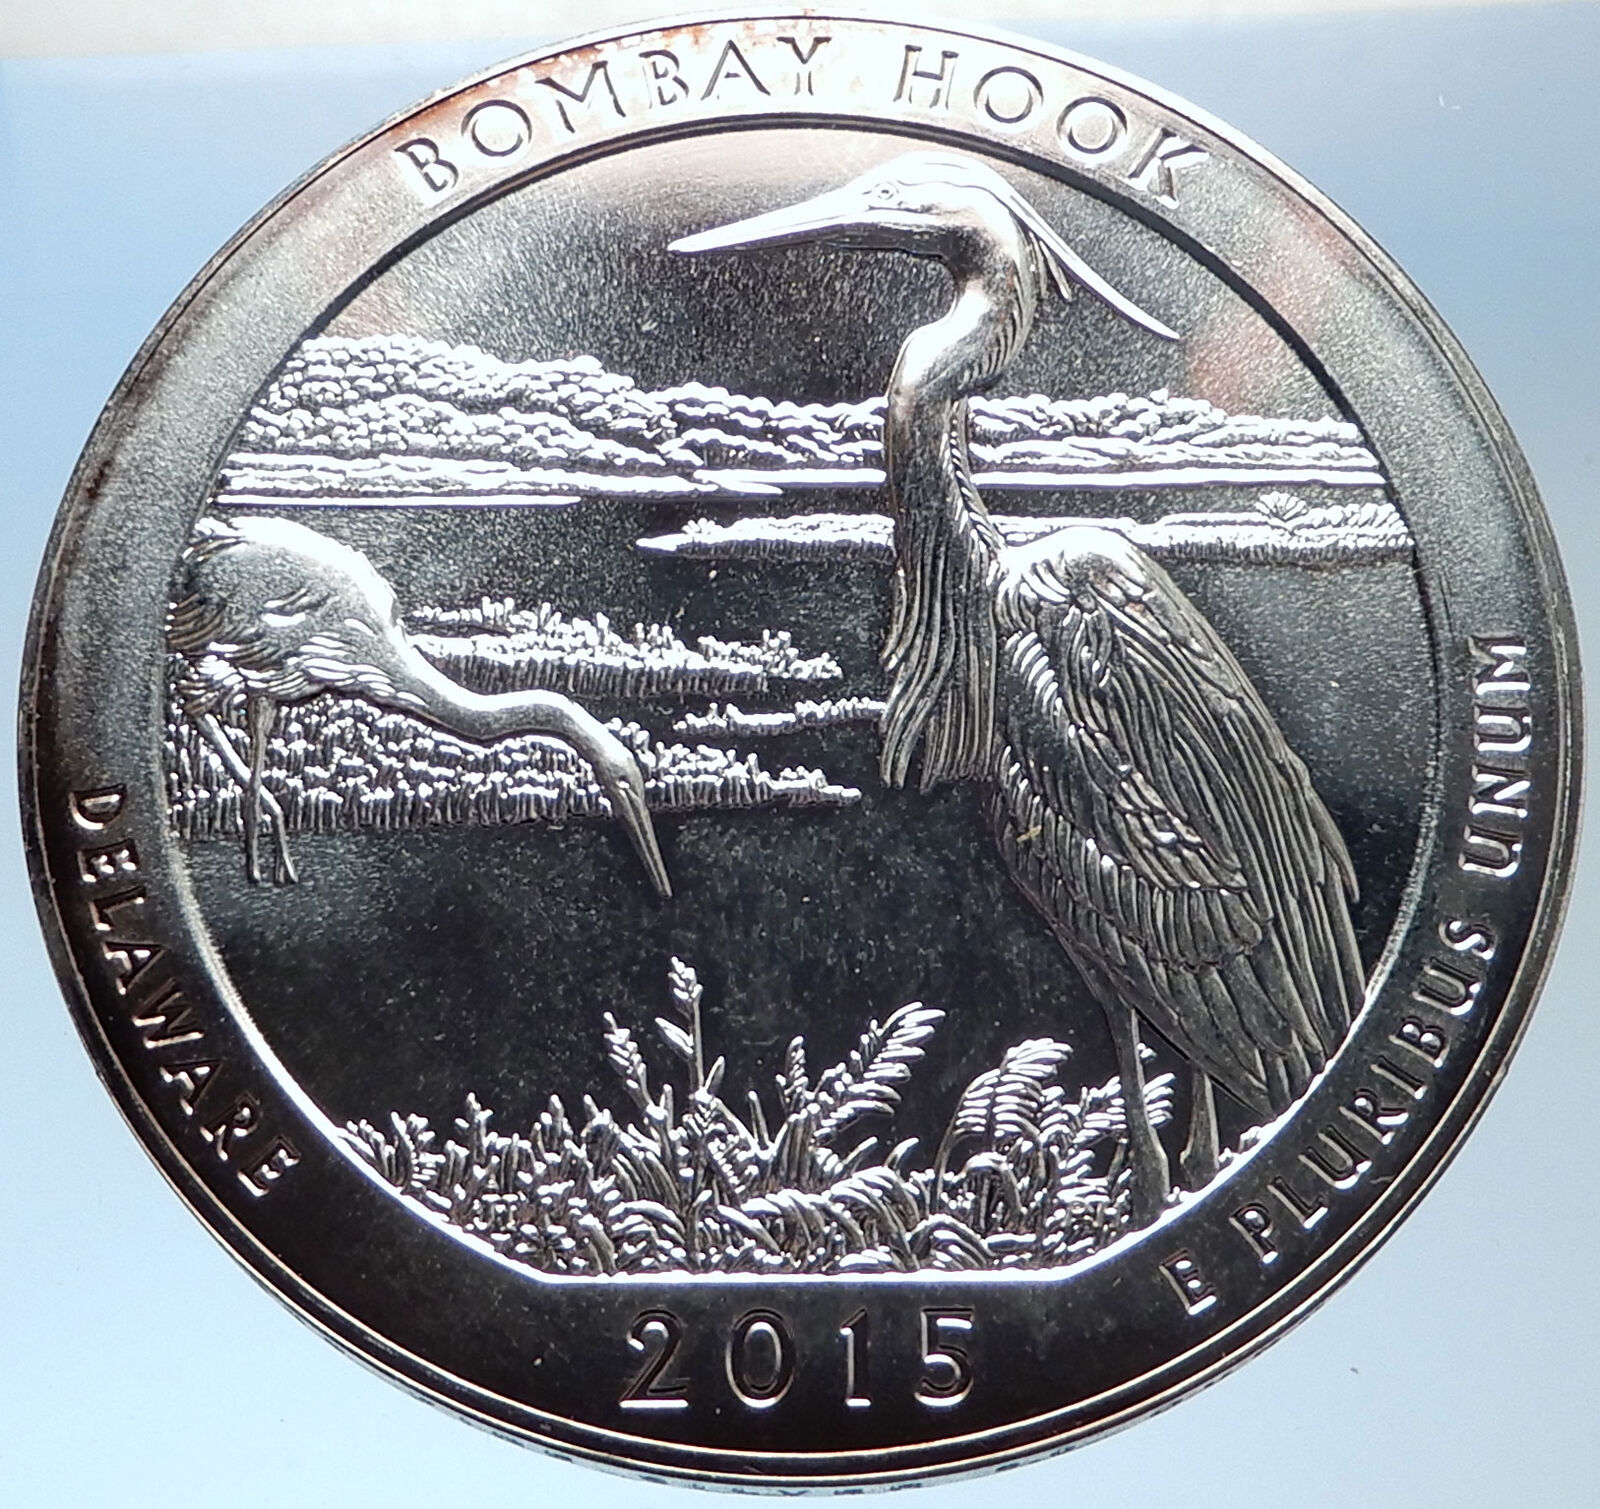 2015 UNITED STATES US Huge 7.6cm Silver Medal Coin BOMBAY HOOK DELAWARE i73701